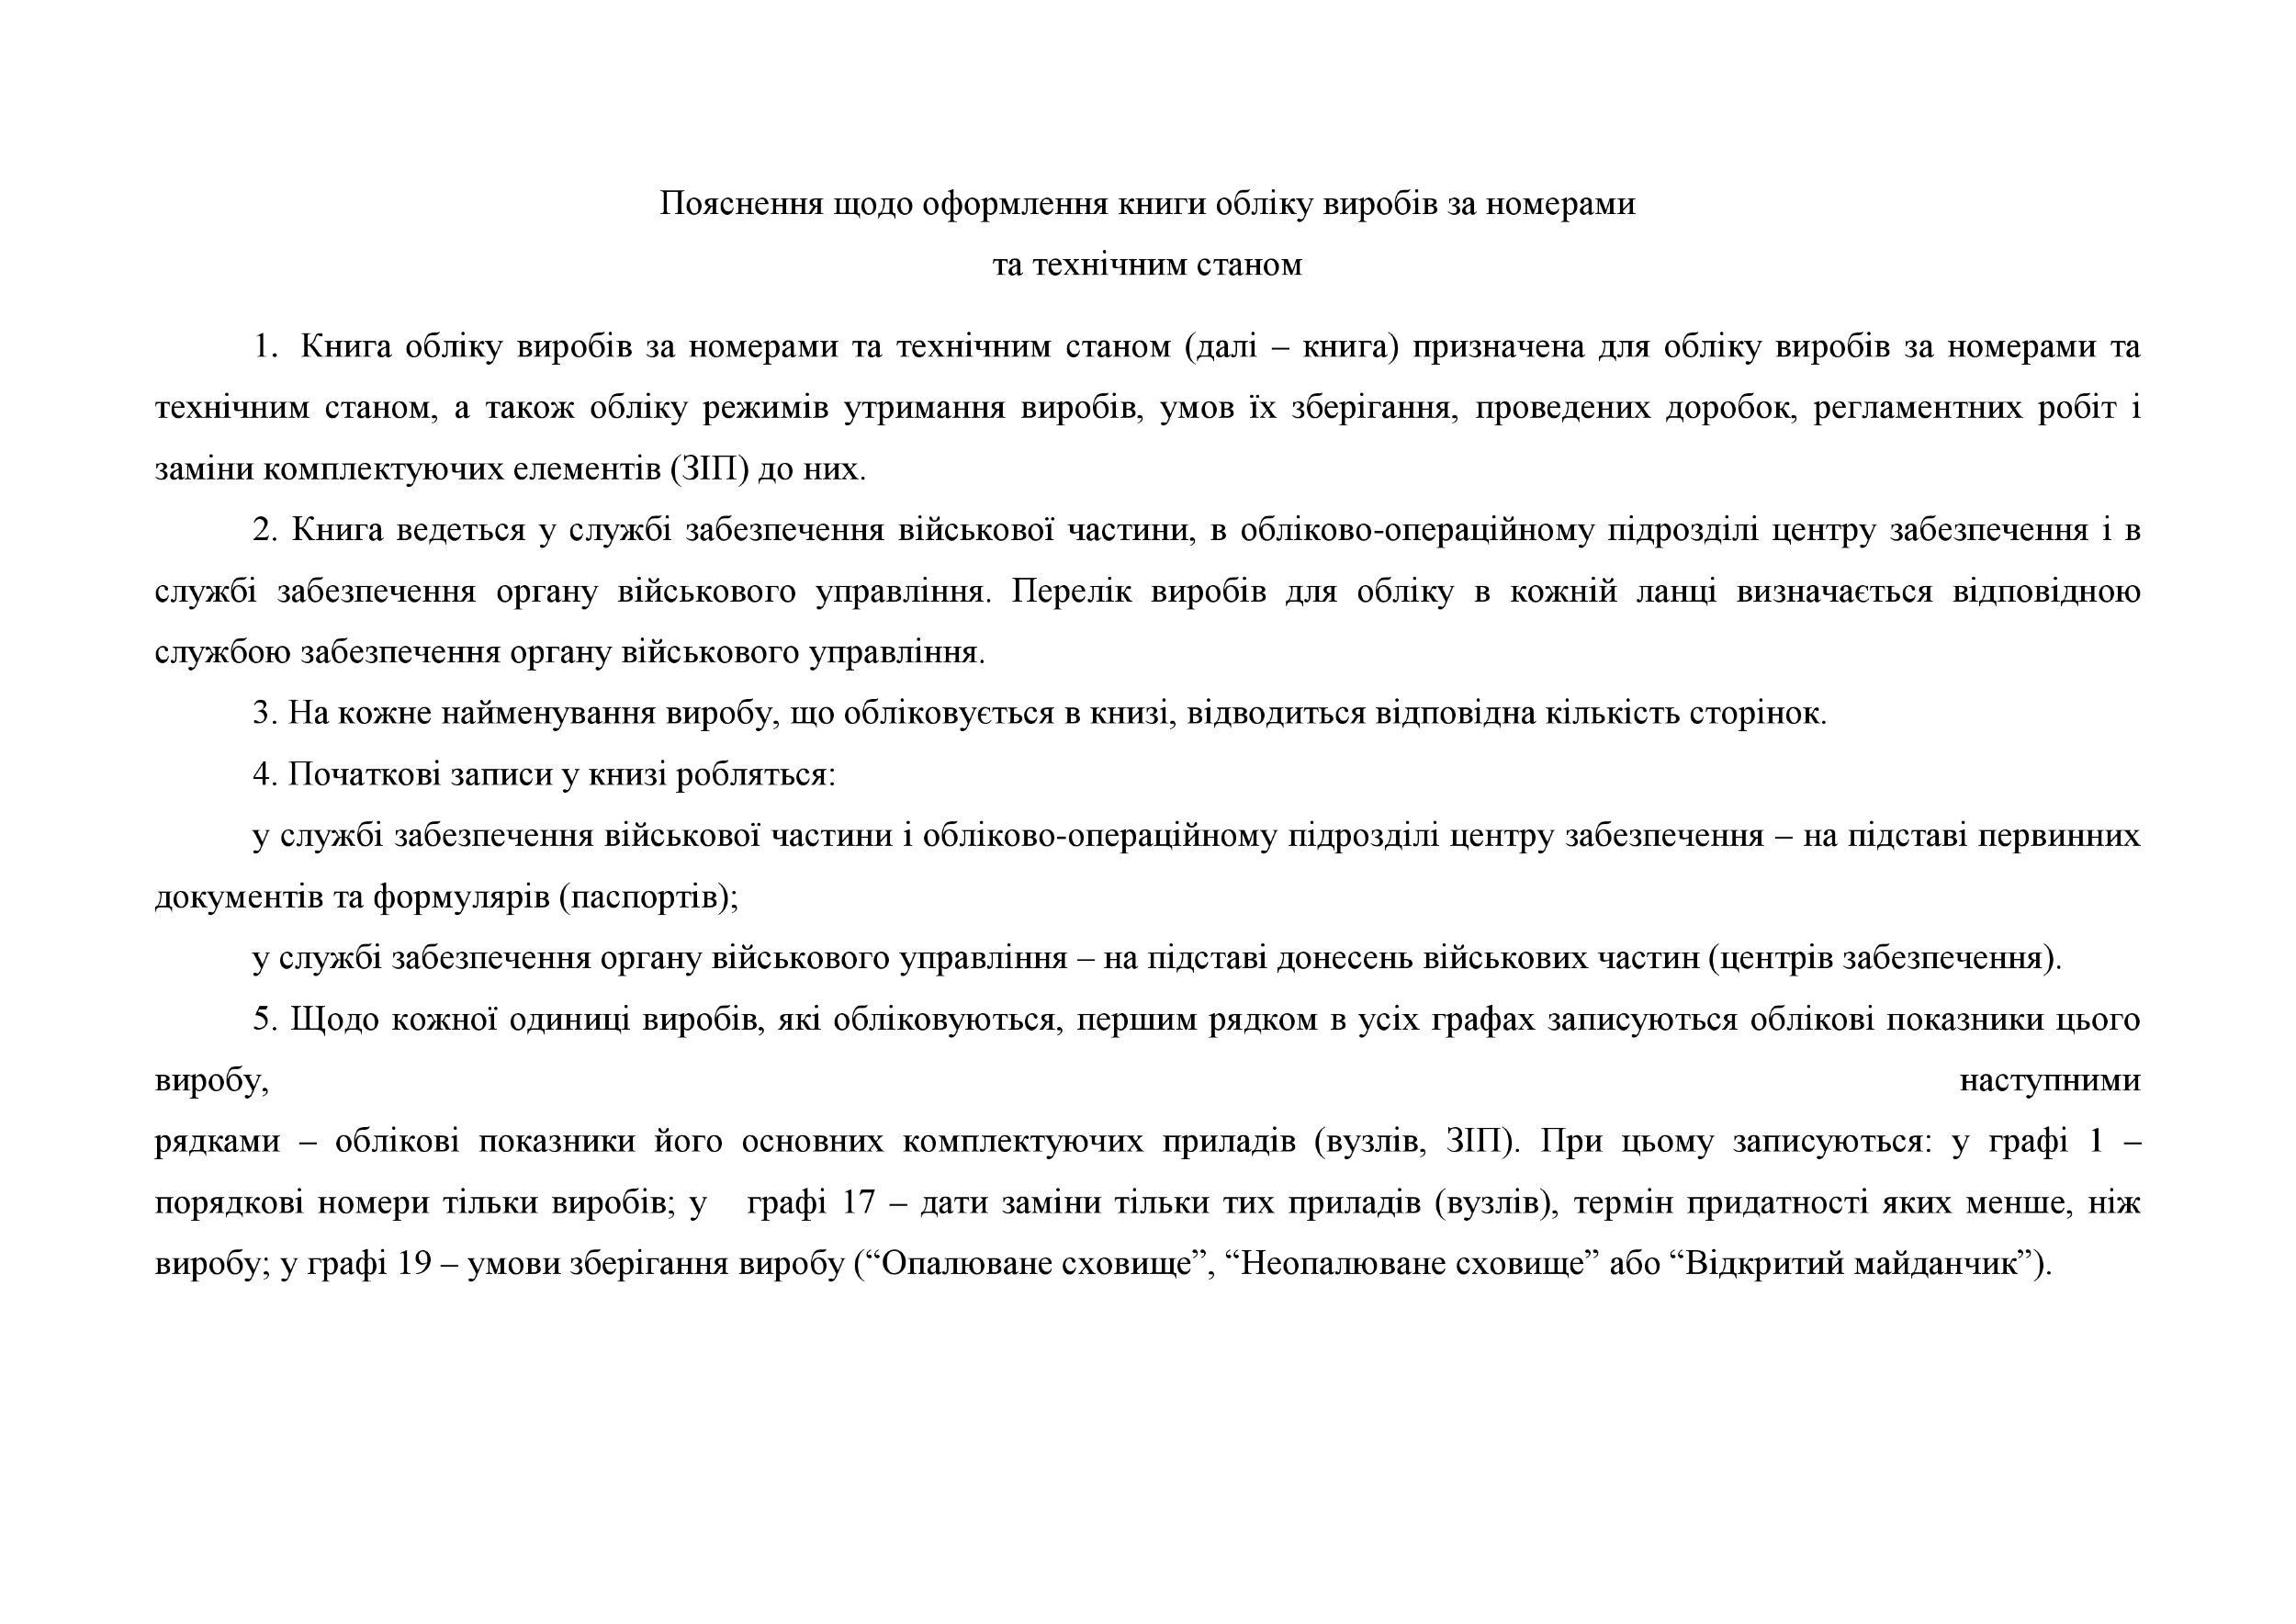 Книга обліку виробів за номерами та технічним станом, додаток 49. Автор — Міністерство оборони України. 